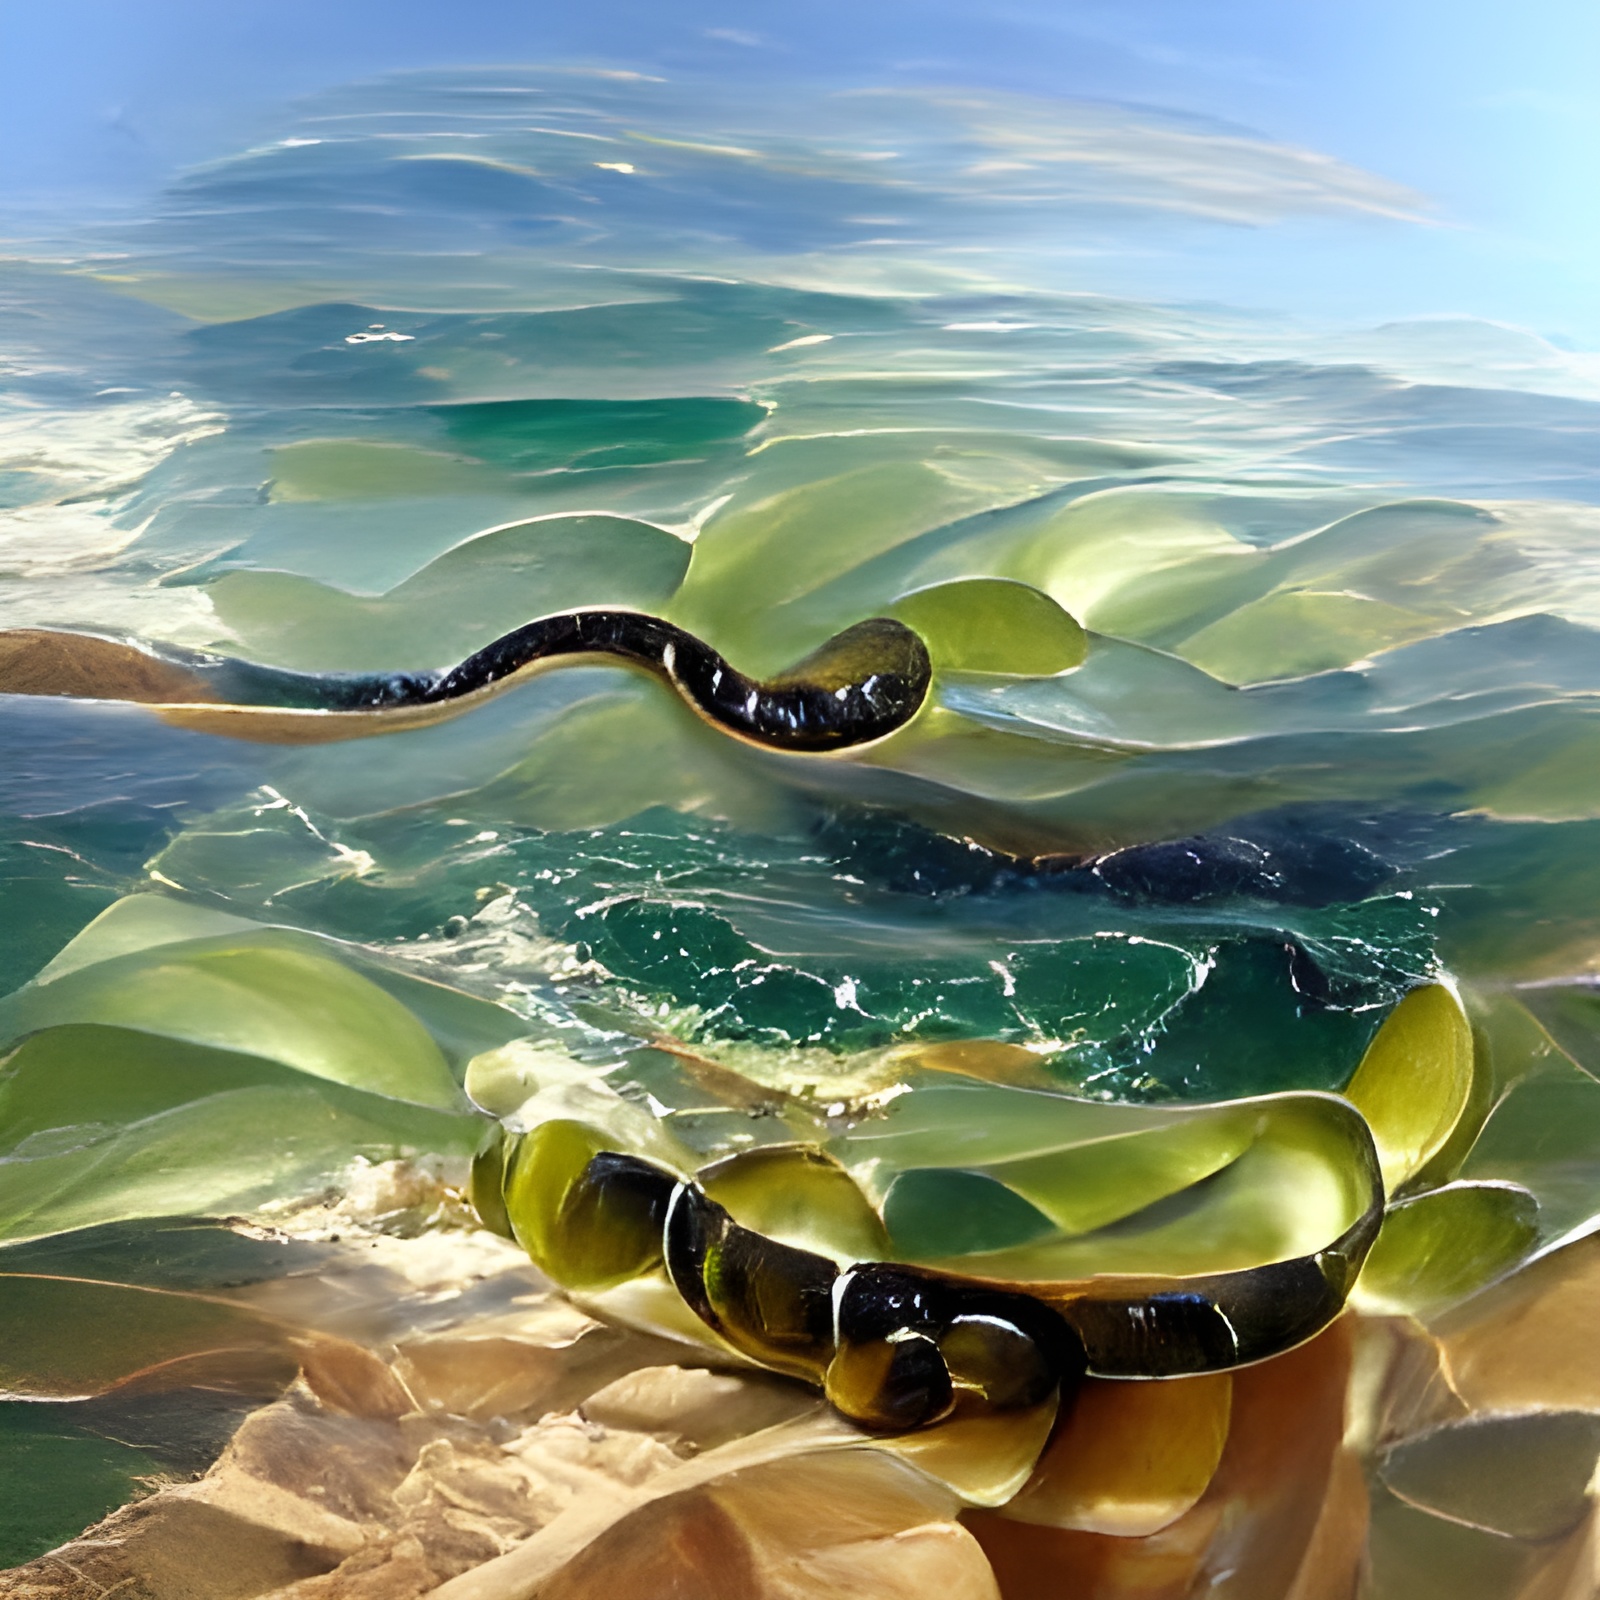 10007 olive sea snake